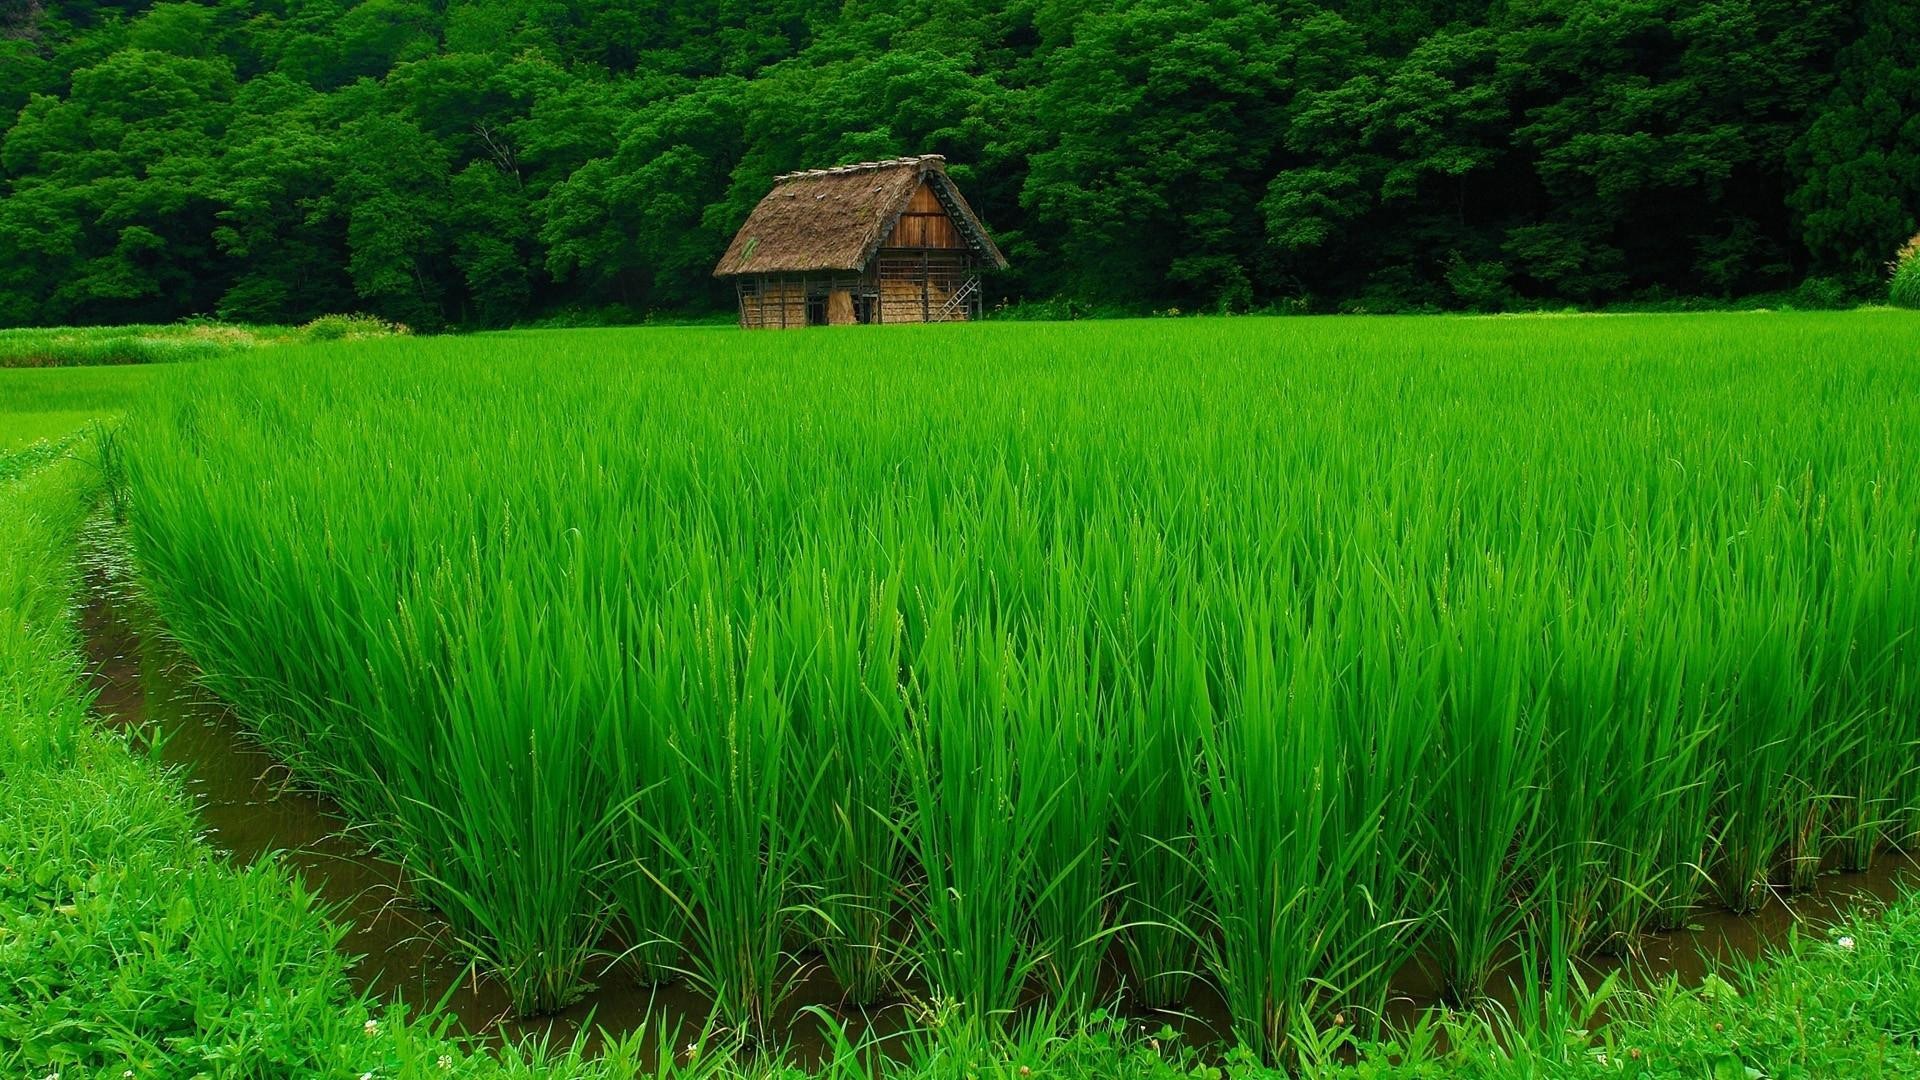 Zastaki.com - Нежная зелень рисовых полей